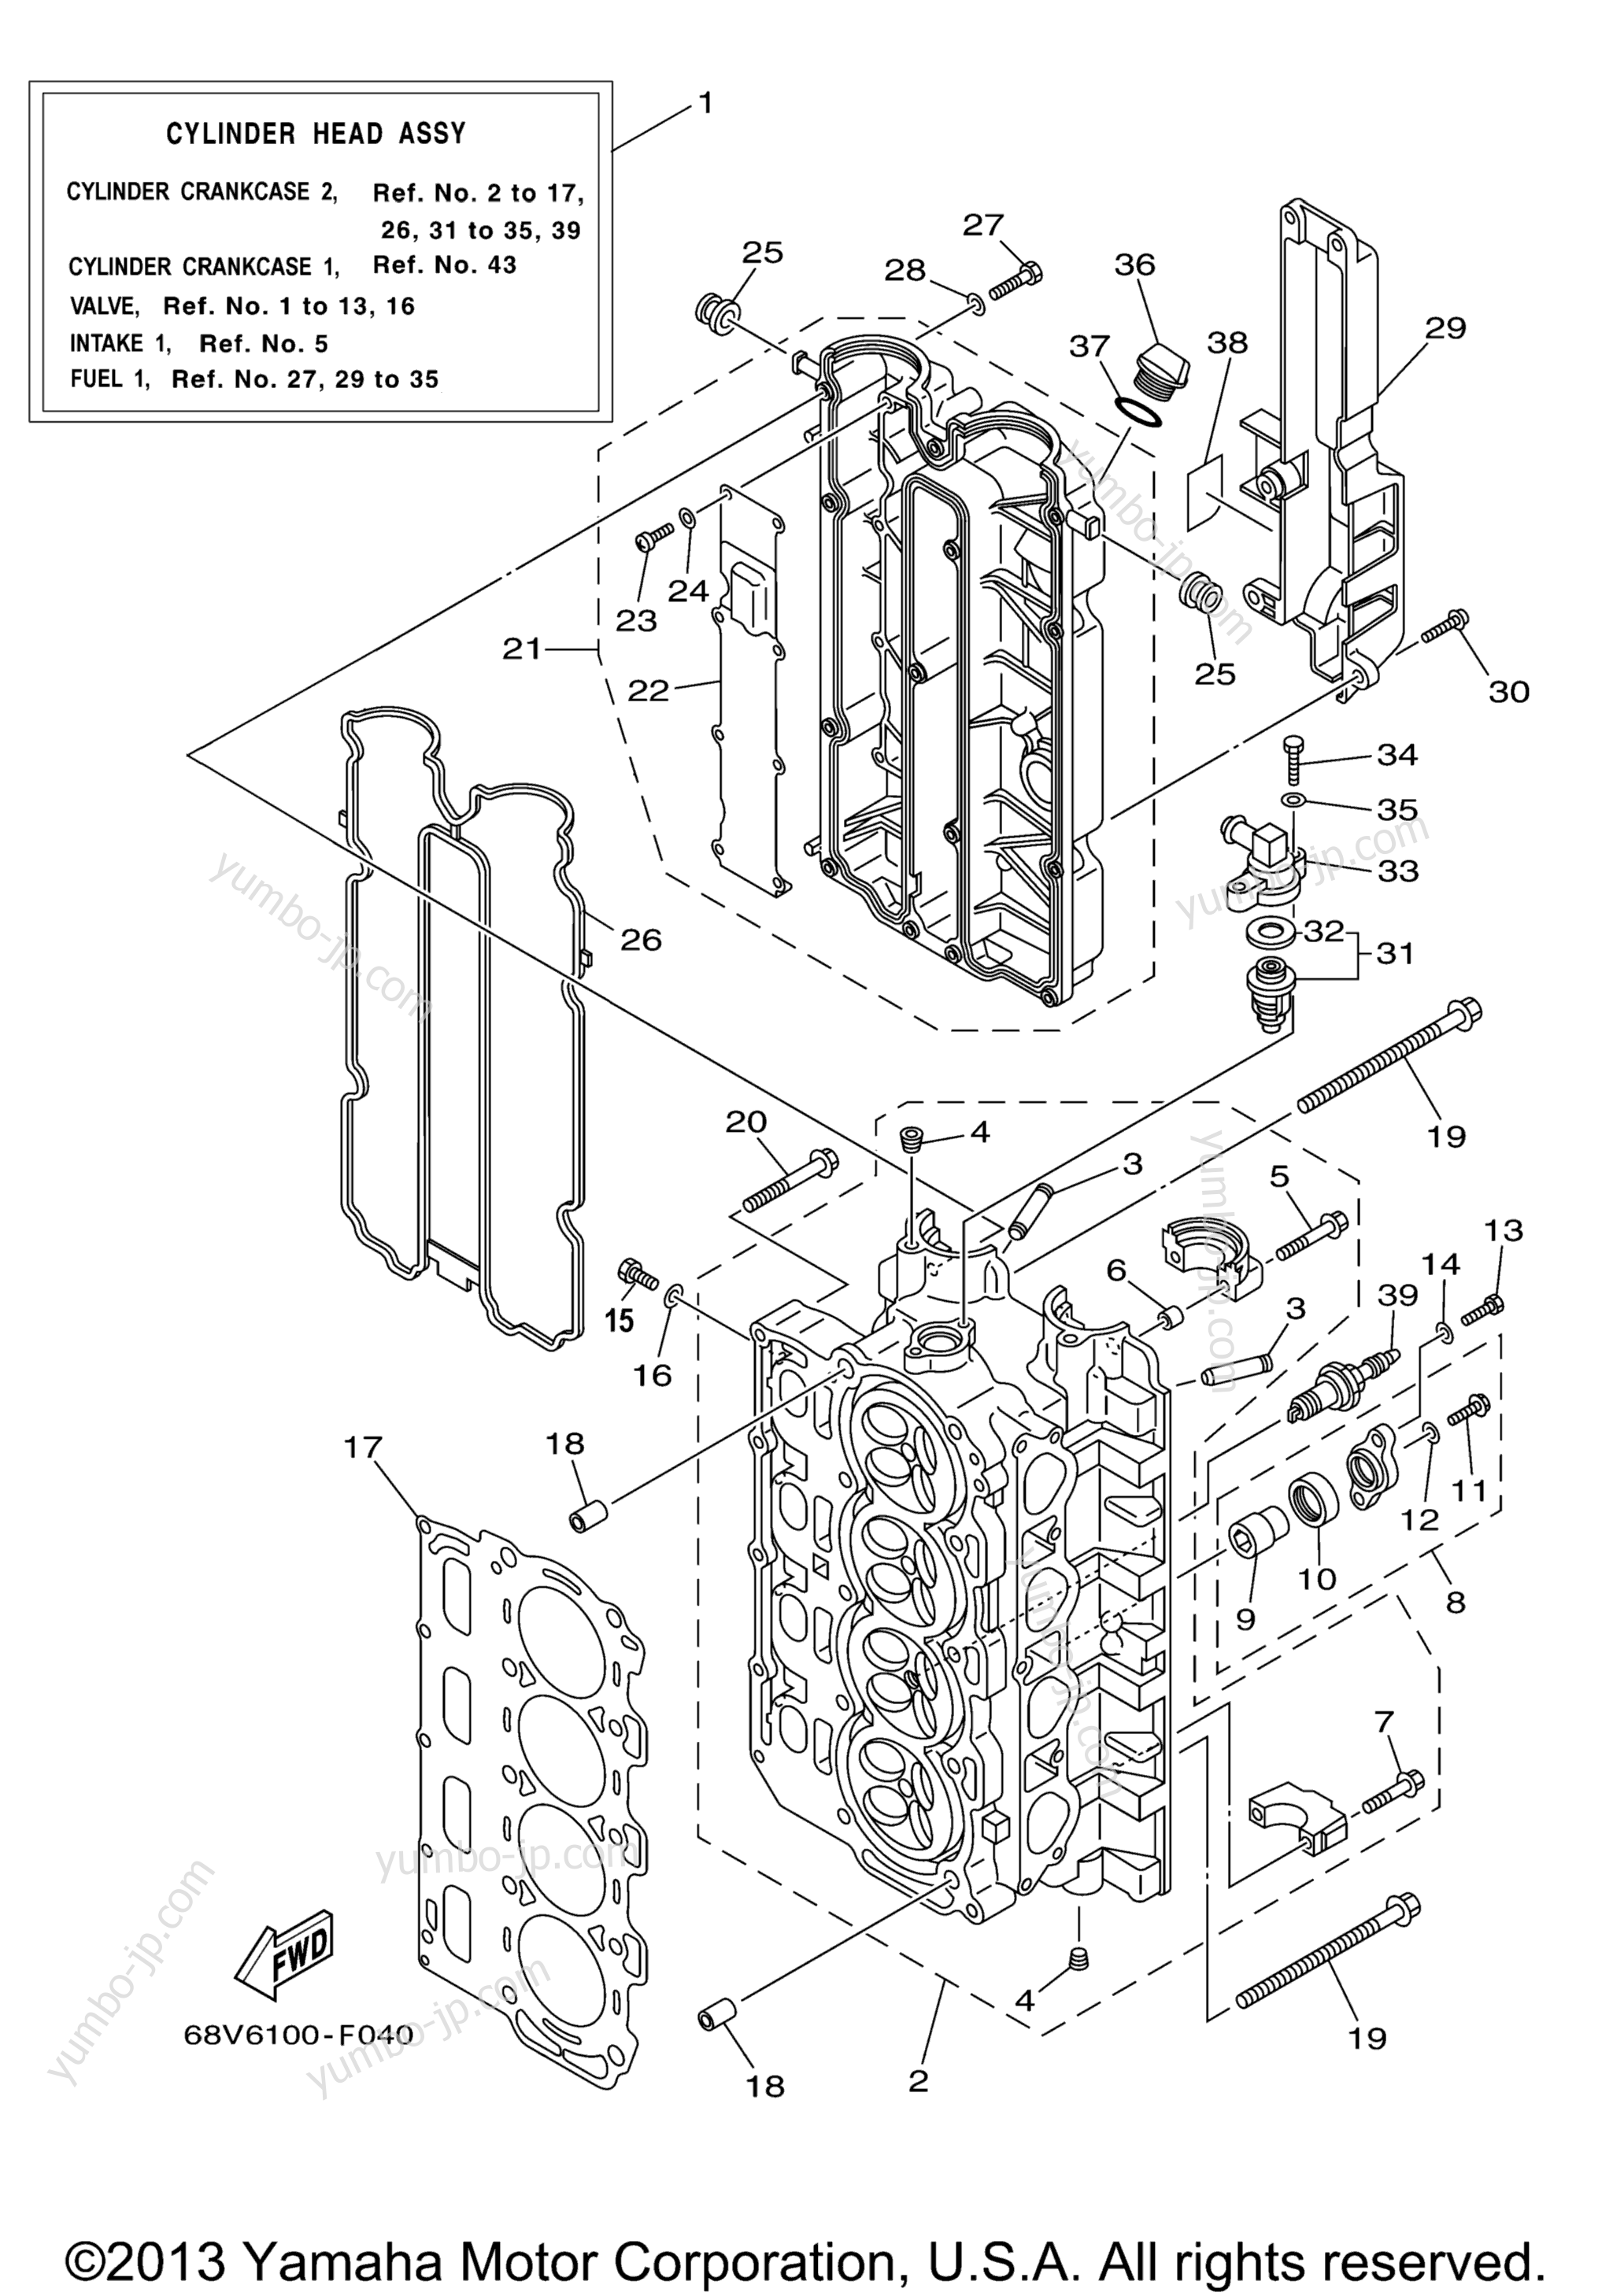 Cylinder Crankcase 2 для лодочных моторов YAMAHA F115TLR (0406) 68V-1066827~1082890 LF115TXR 68W-1002955~1003580 2006 г.